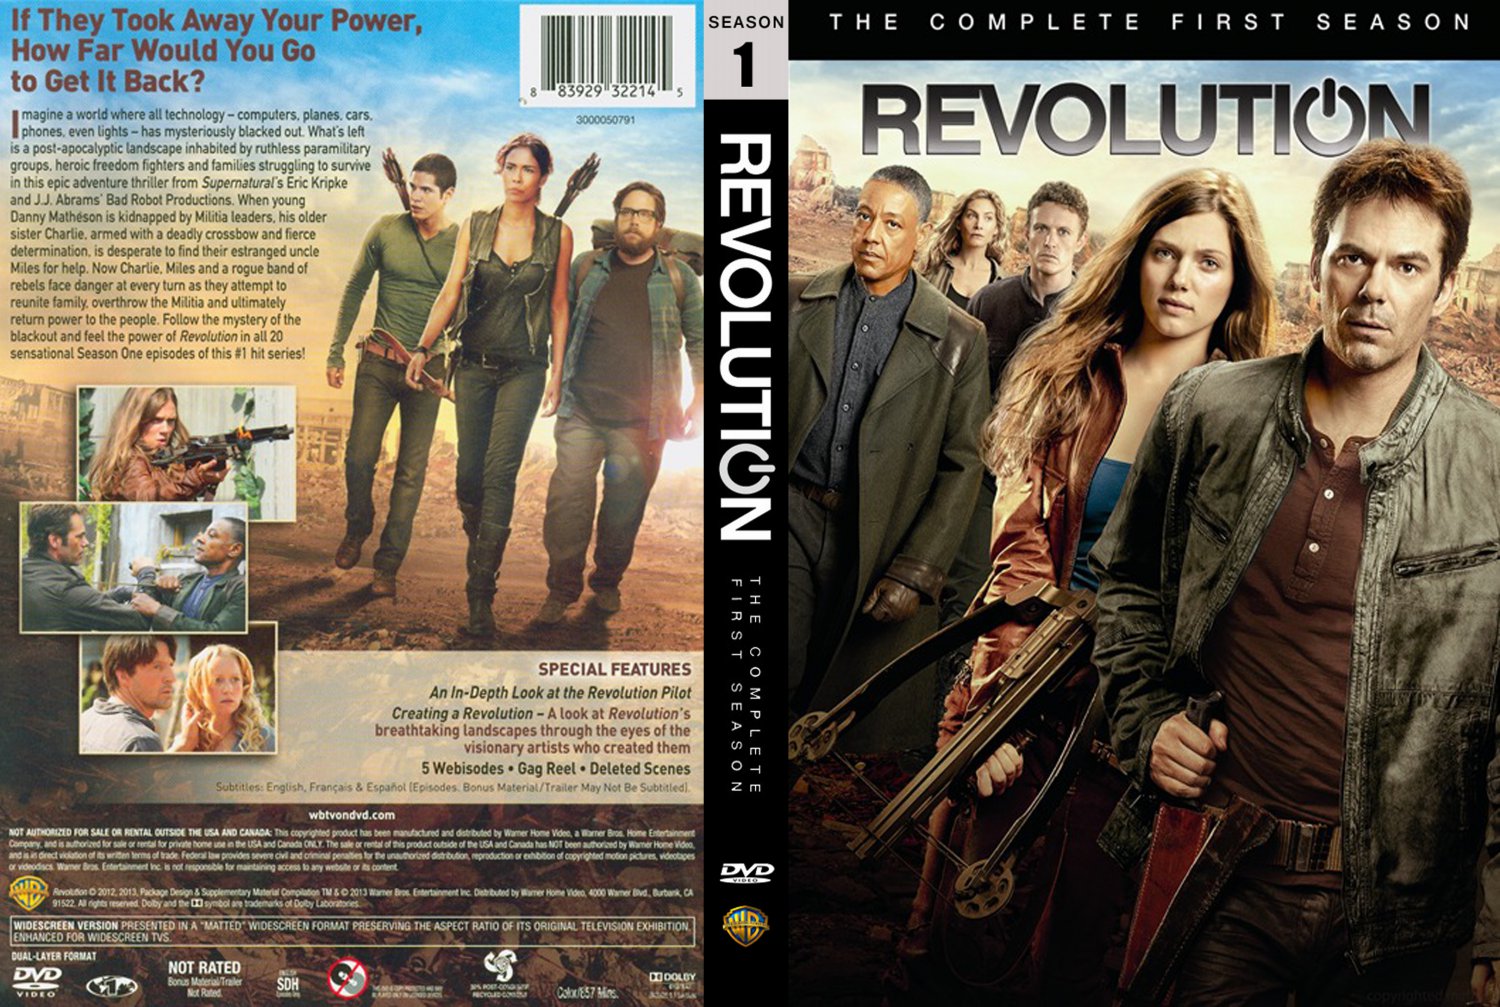 Power & Revolution обложка. Революция (DVD). 2012 обложка